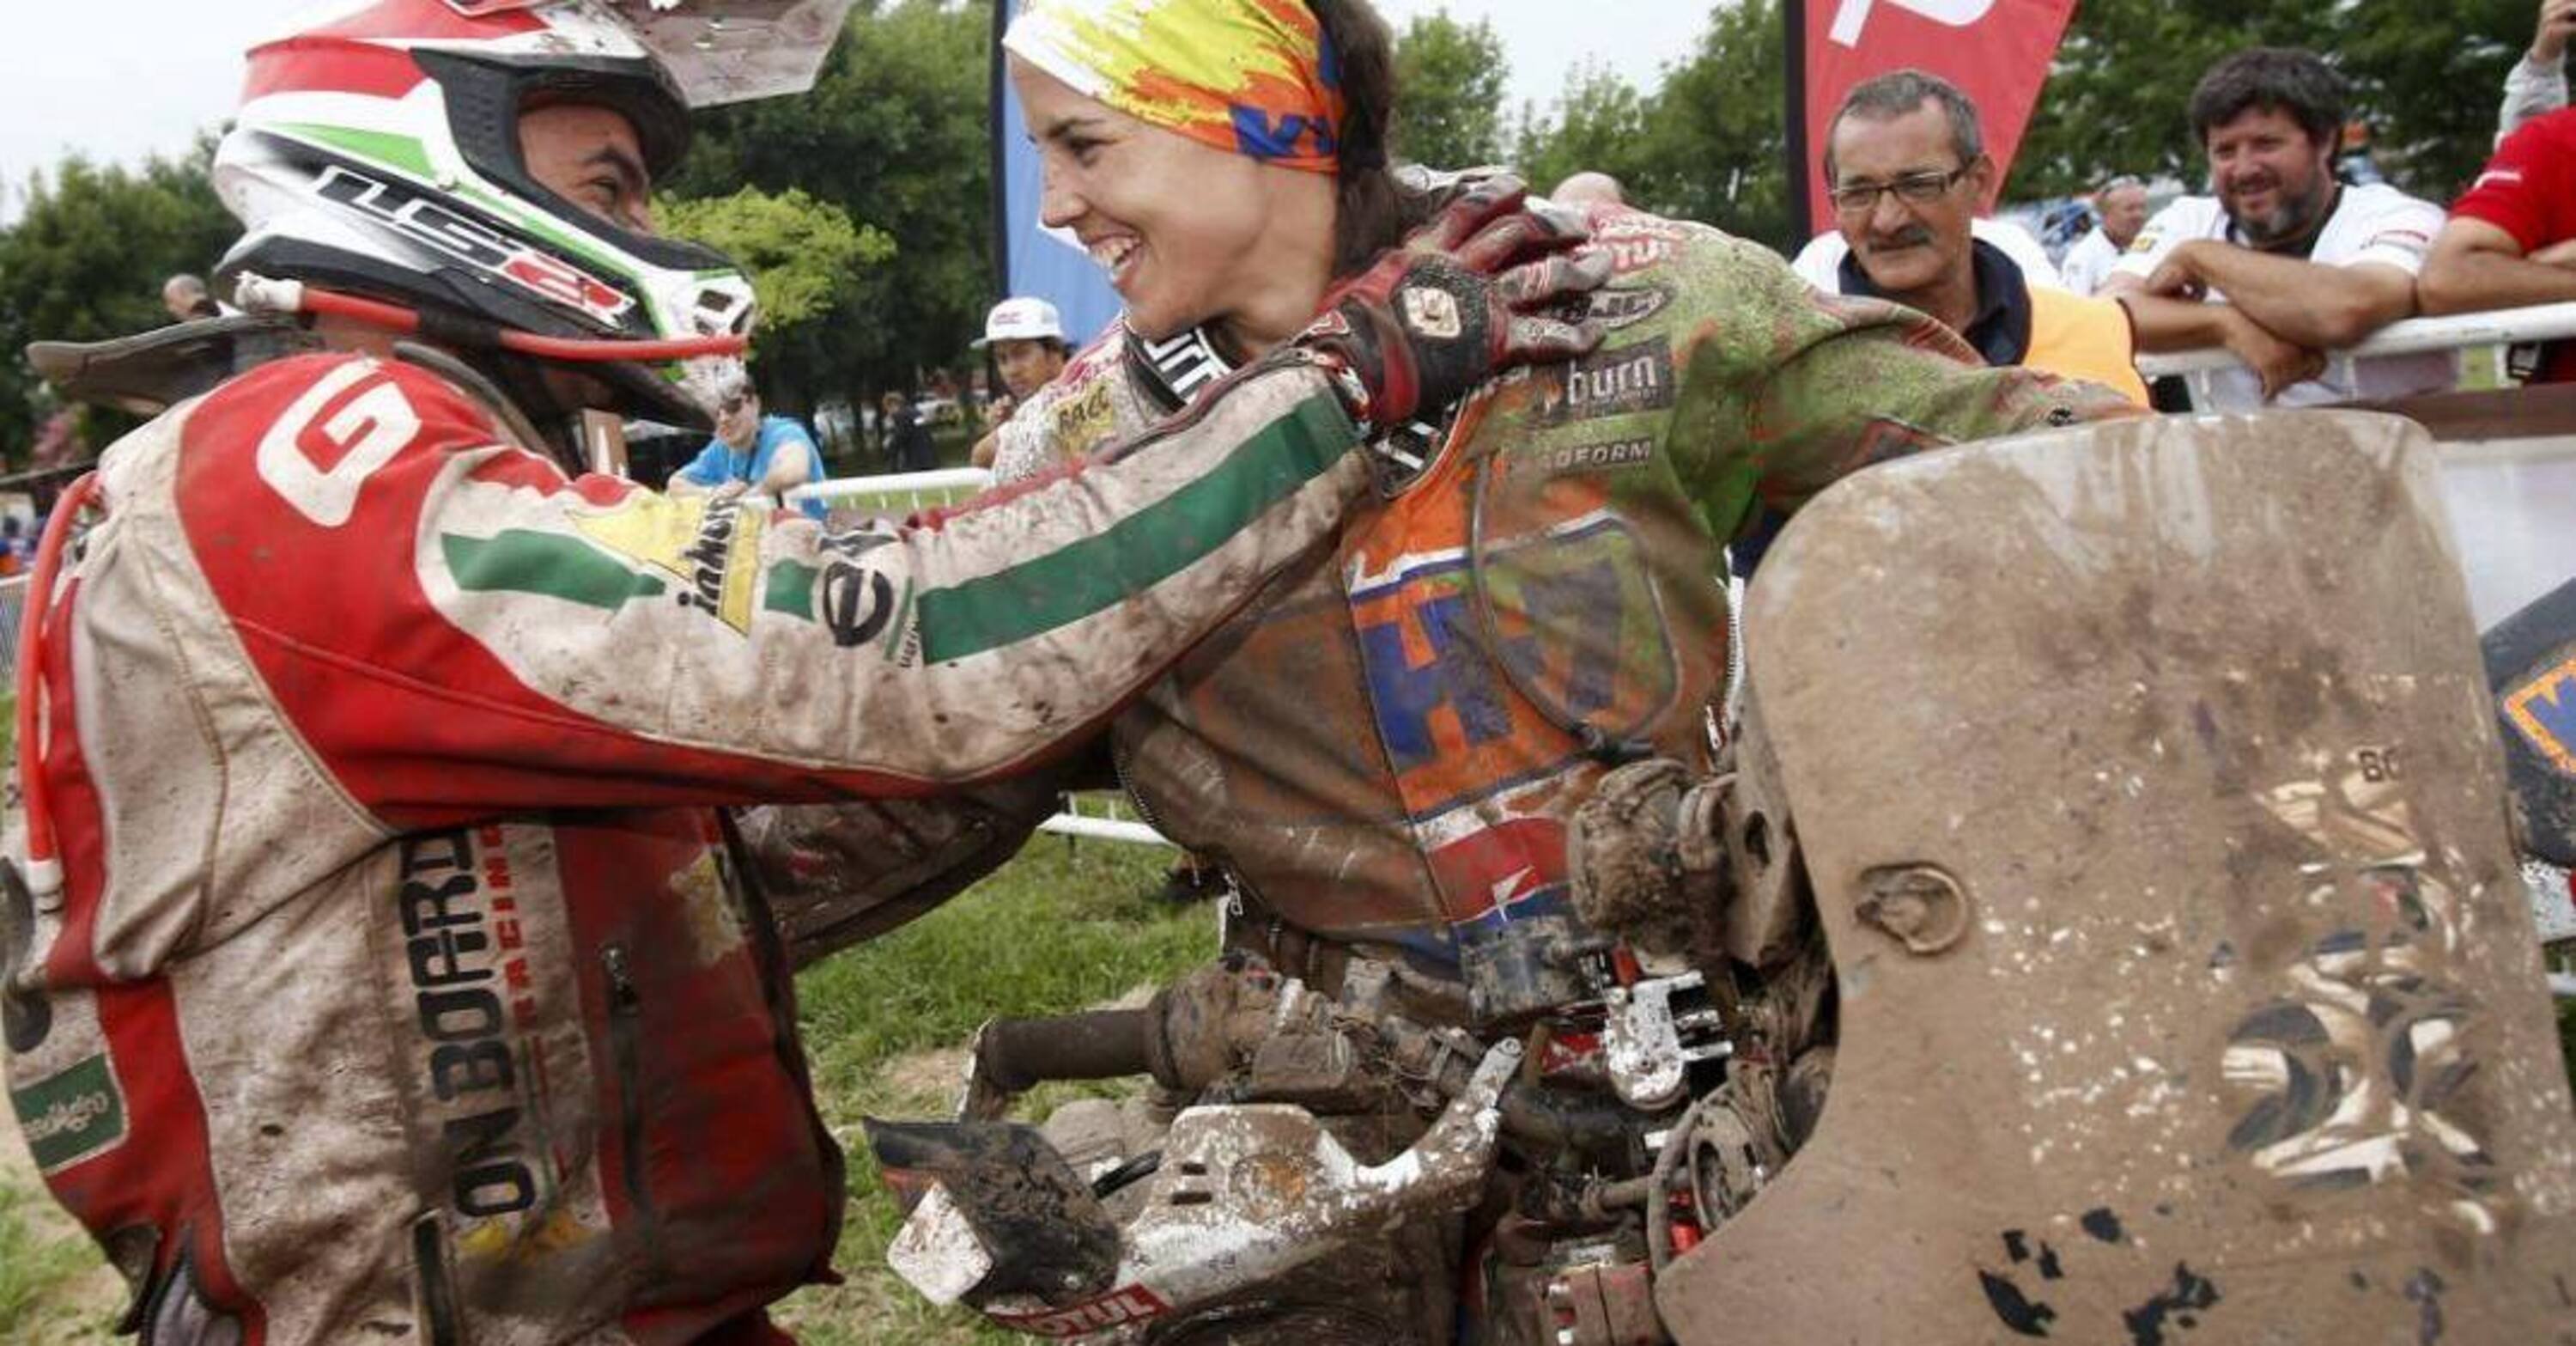 Dakar 2015. Italiani, Matteo Casuccio